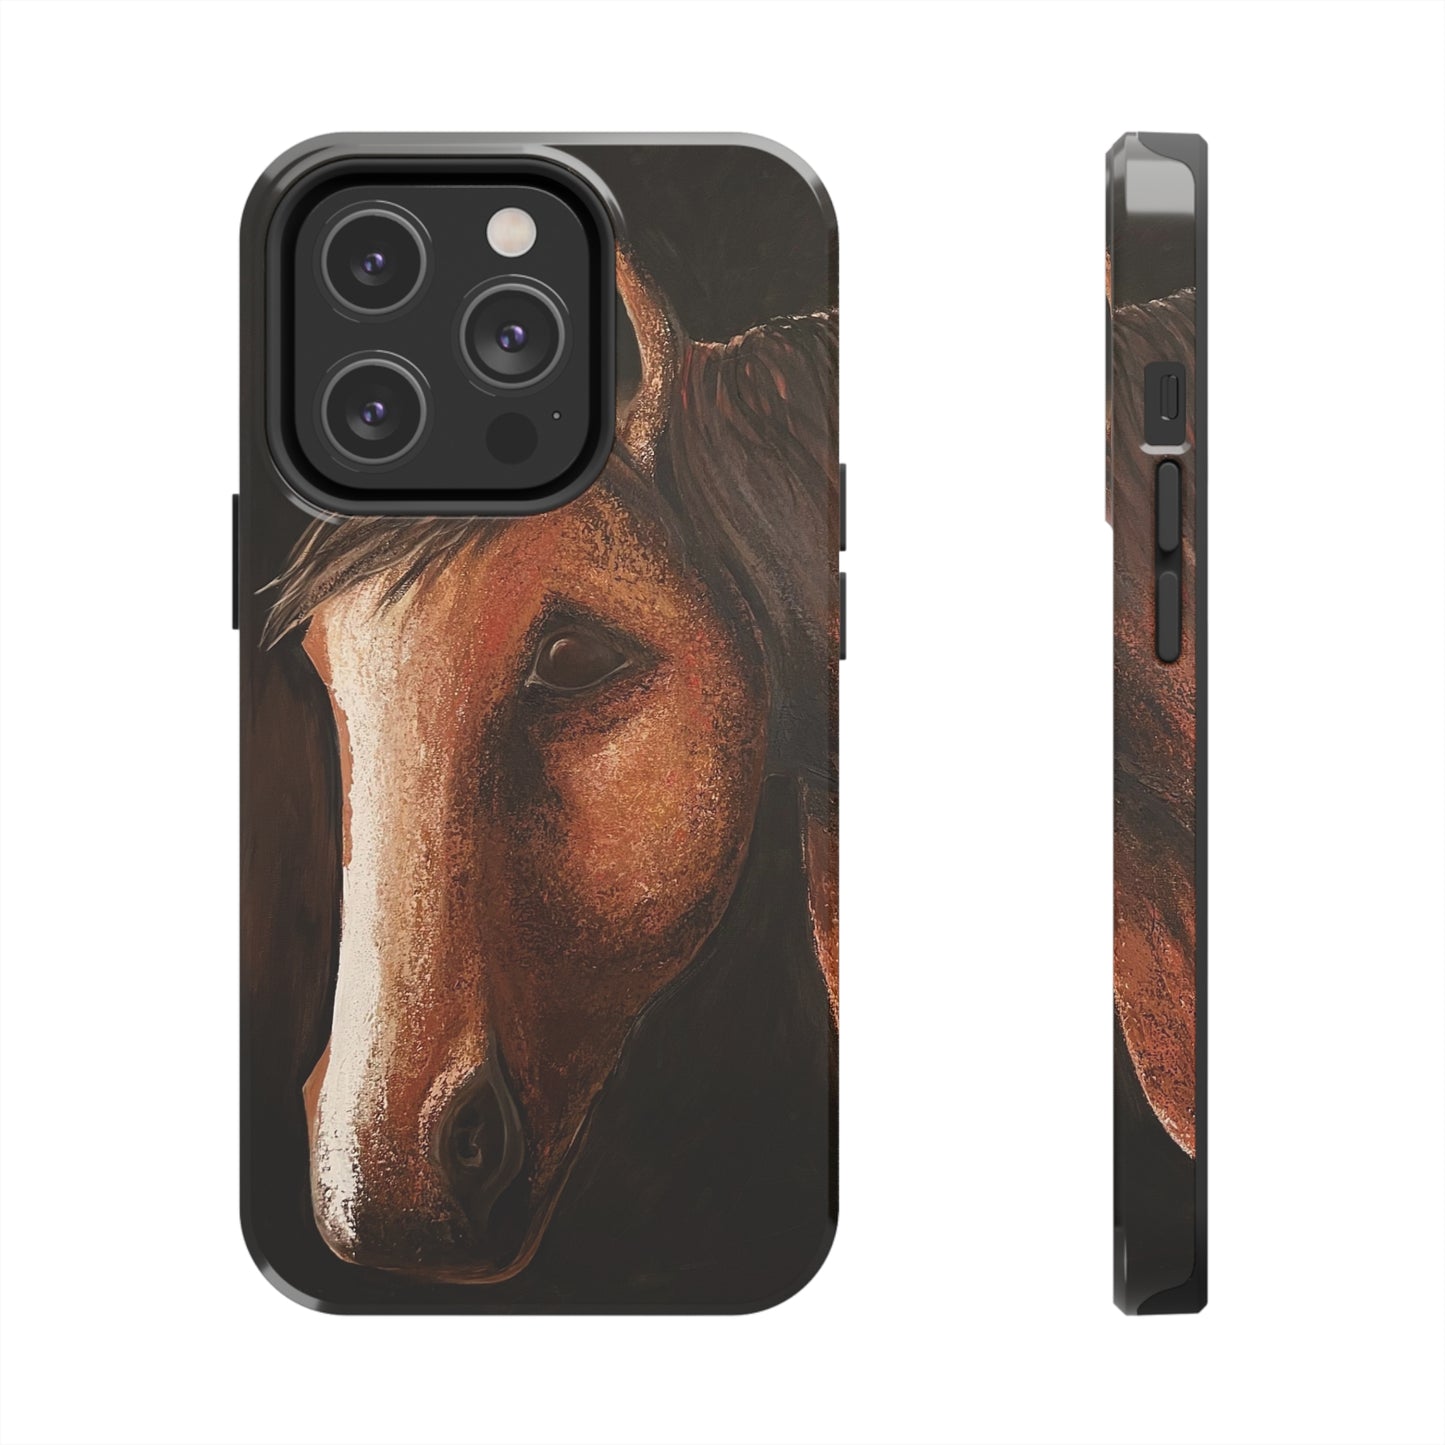 Tough Phone Case - Original art phone case - Slim phone case - Equestrian Art phone case - Spirit